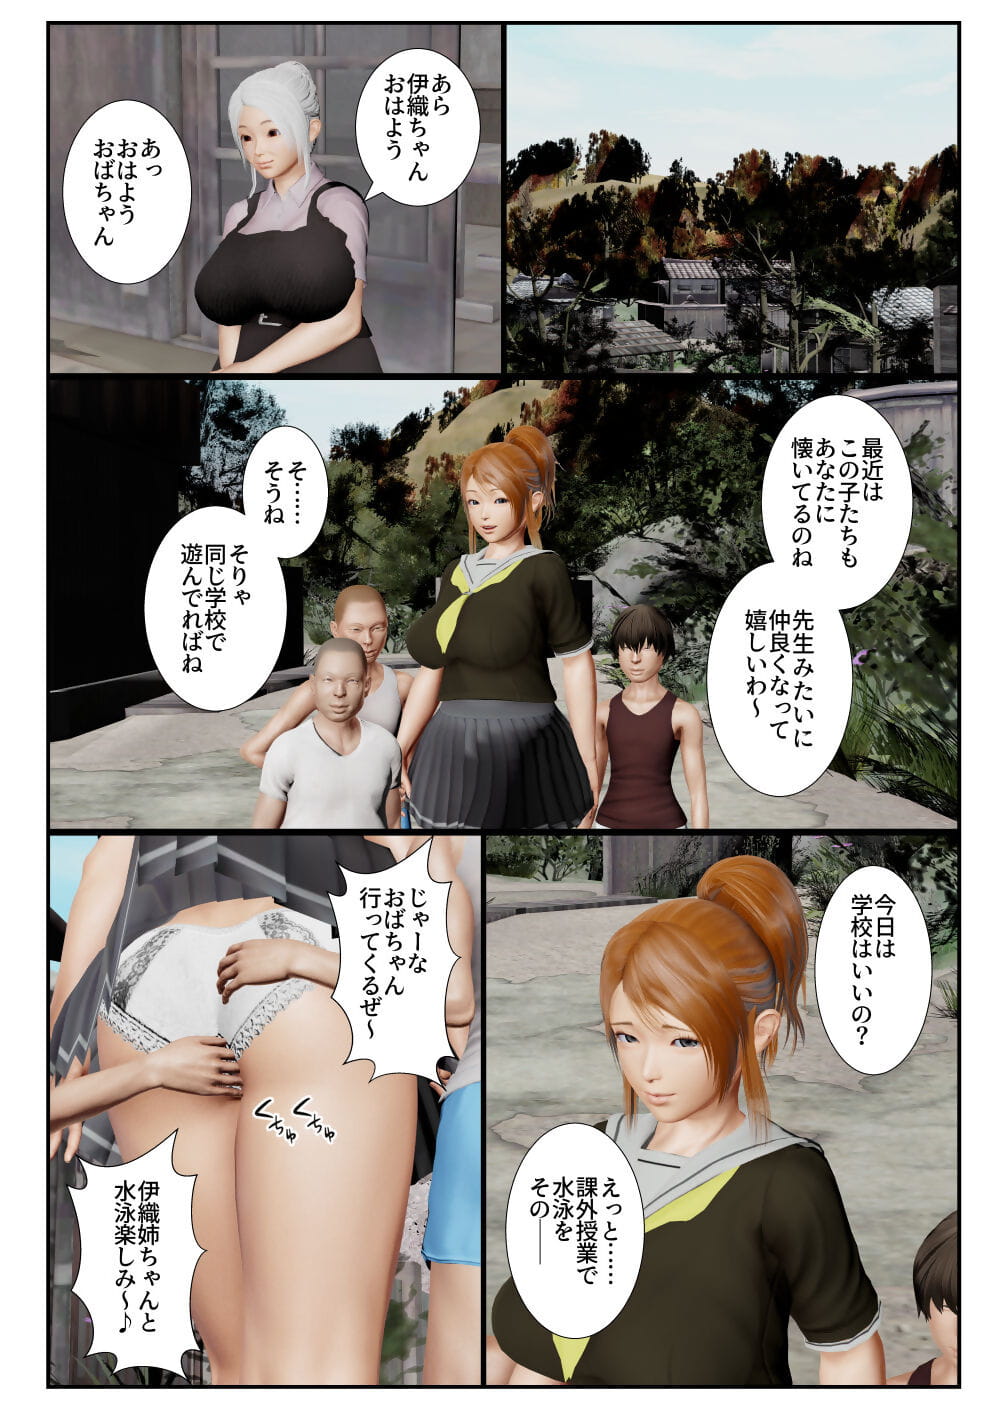 goriramu Тоума кенши Ширидзу Демон мечник серия часть 5 page 1